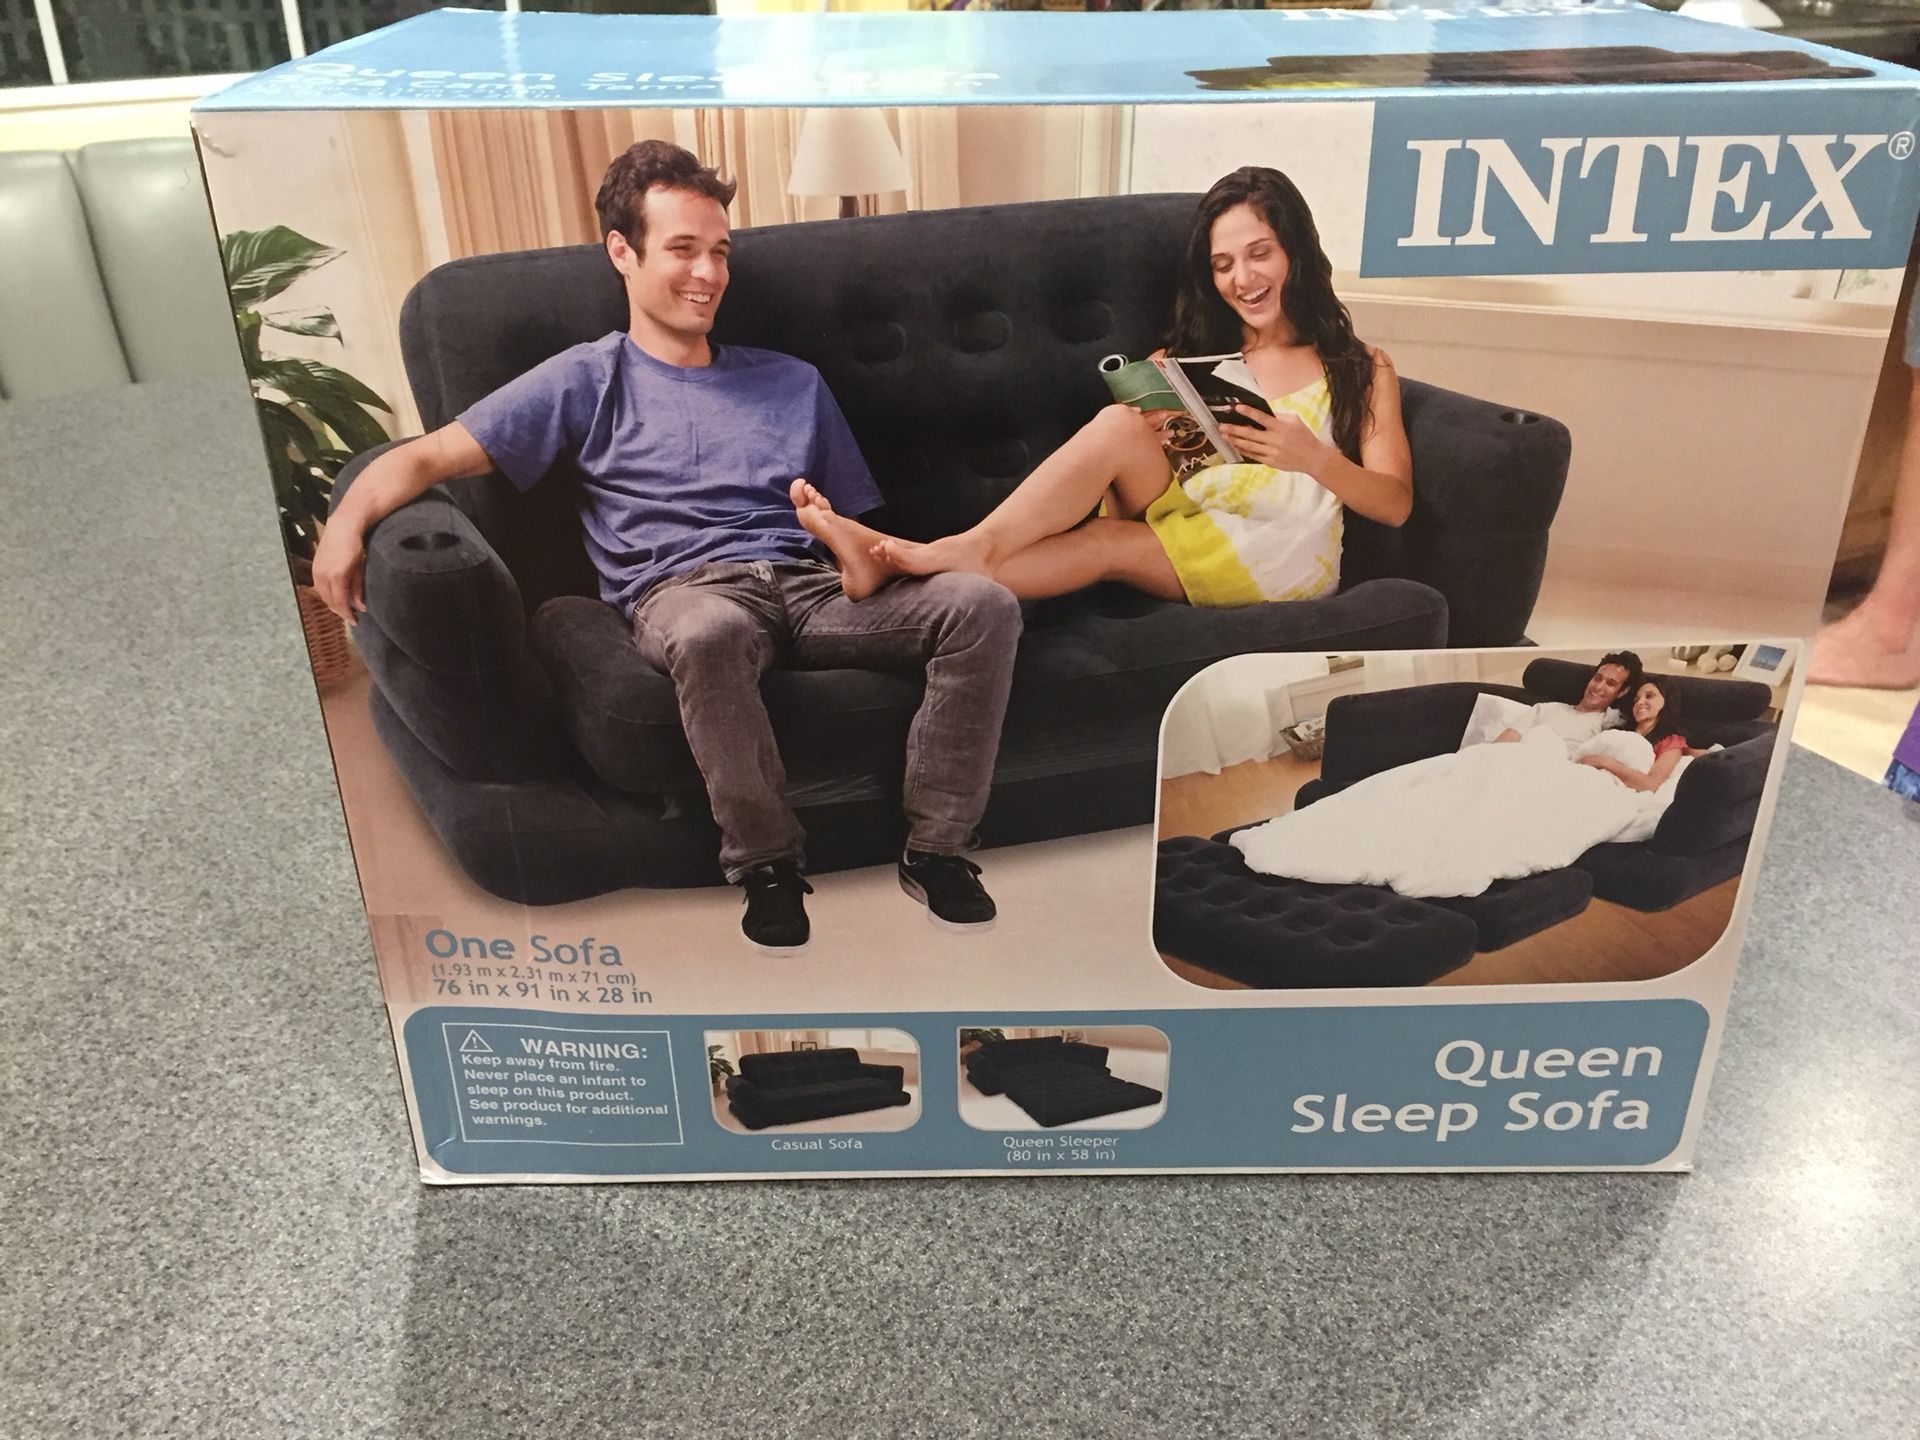 Intex queen sleep sofa